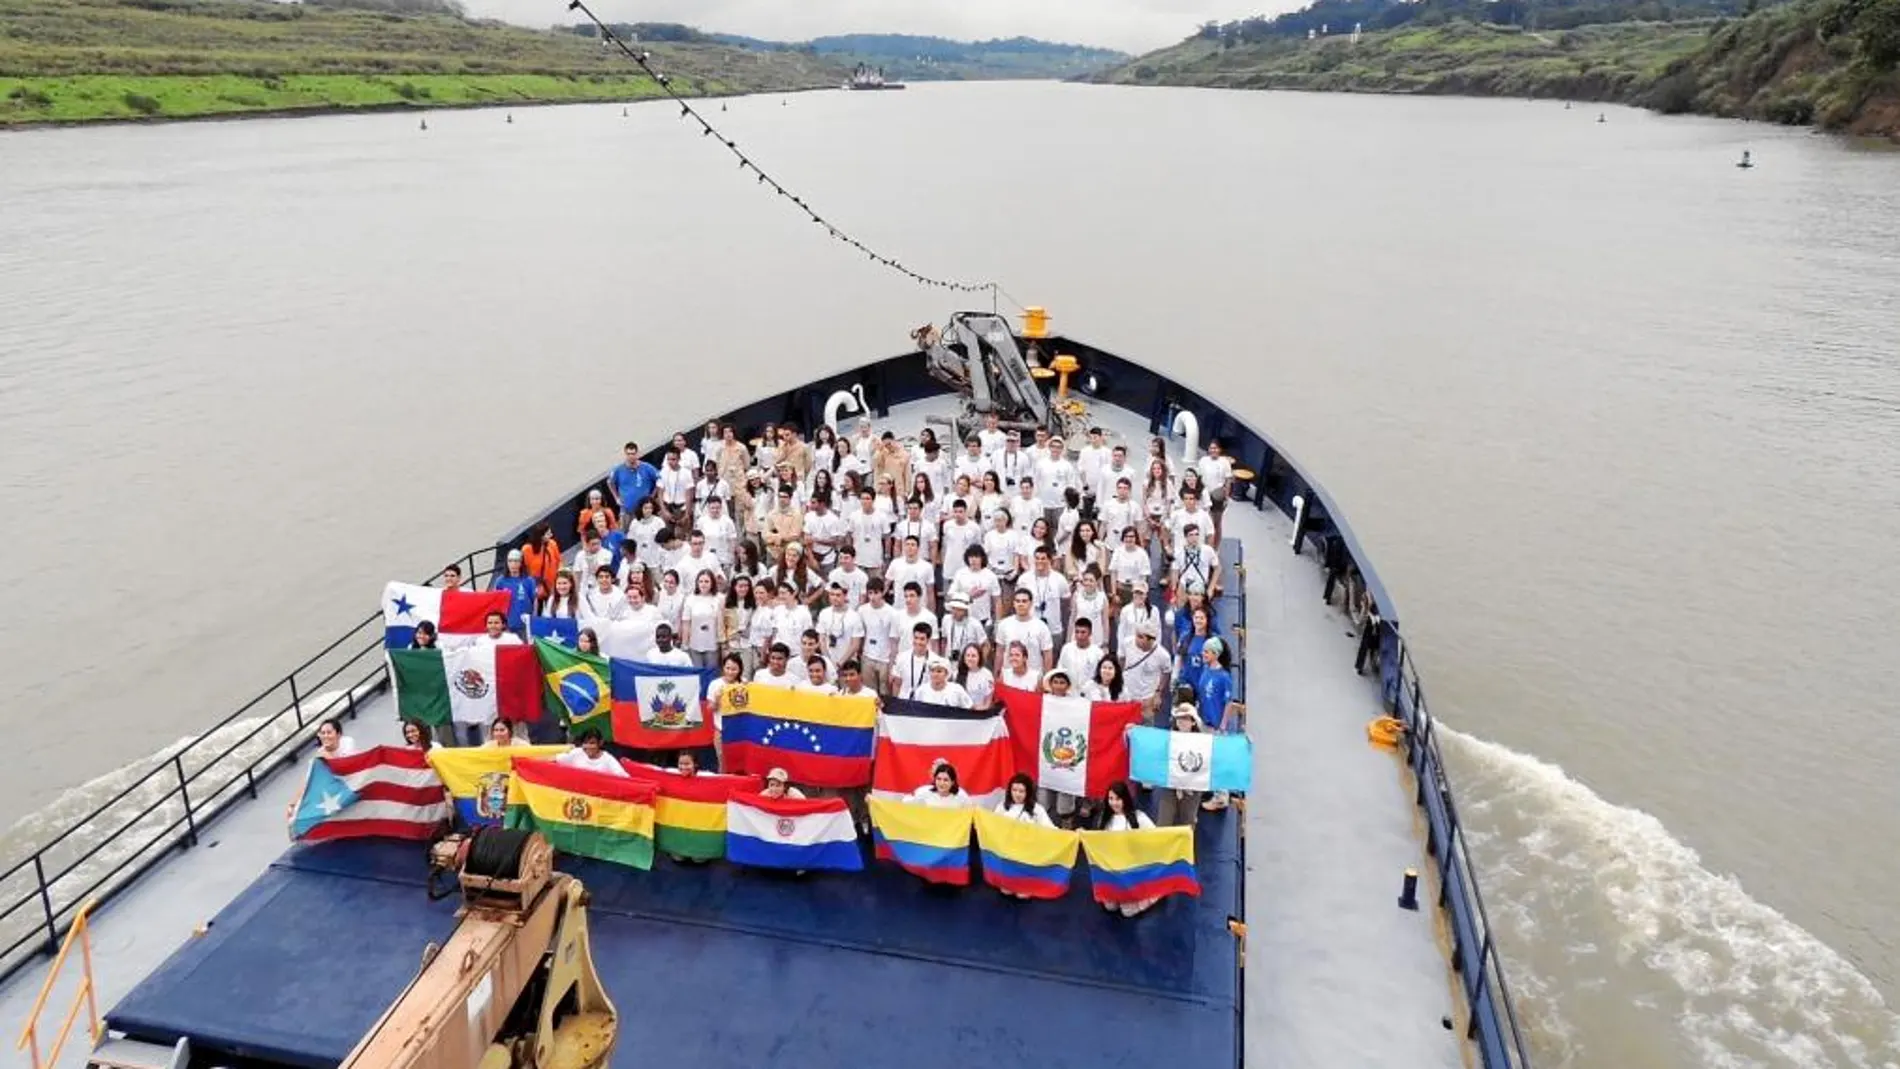 Imagen de los expedicionarios surcando el canal de Panamá.